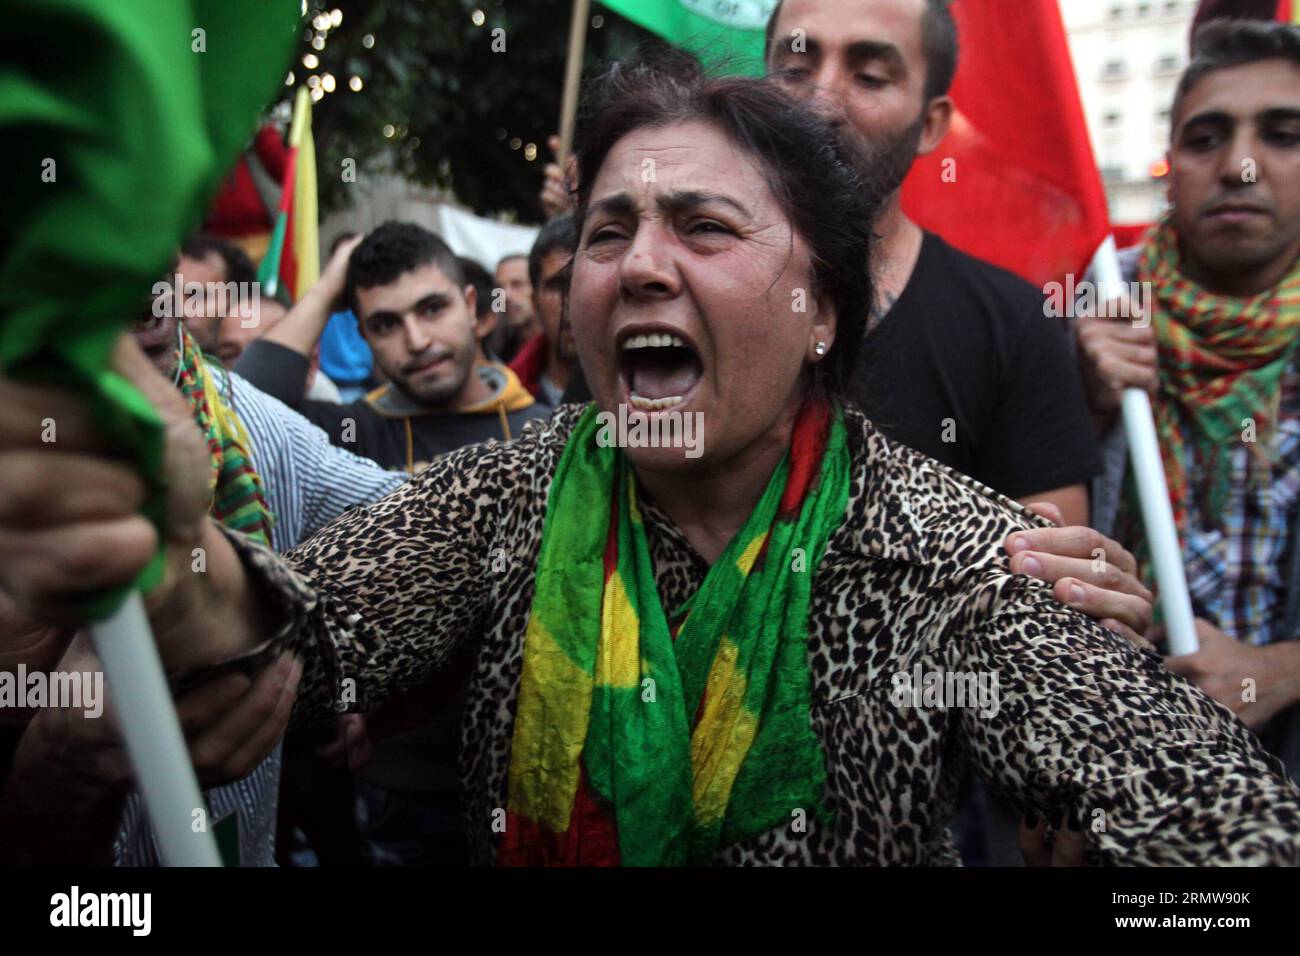 (141013) -- ATHEN, 13. Oktober 2014 -- Eine kurdische Frau, die in Griechenland lebt, protestiert während einer pro-kurdischen Demonstration gegen Angriffe von Militanten des Islamischen Staates auf die syrische Stadt Kobane und das Fehlen von Maßnahmen der türkischen Regierung im Zentrum von Athen, Griechenland, am 13. Oktober 2014. Intensivere Luftangriffe halfen kurdischen Milizen, Militante des Islamischen Staates, die für Kobane kämpften, zurückzudrängen, da Druck auf mehr internationale Maßnahmen zur Rettung der wichtigen syrischen Grenzstadt stieg. ) GRIECHENLAND-ATHEN-PROTEST-IST MariosxLolos PUBLICATIONxNOTxINxCHN Athen OKT 13 2014 eine kurdische Frau, die in Griechenland lebt Stockfoto